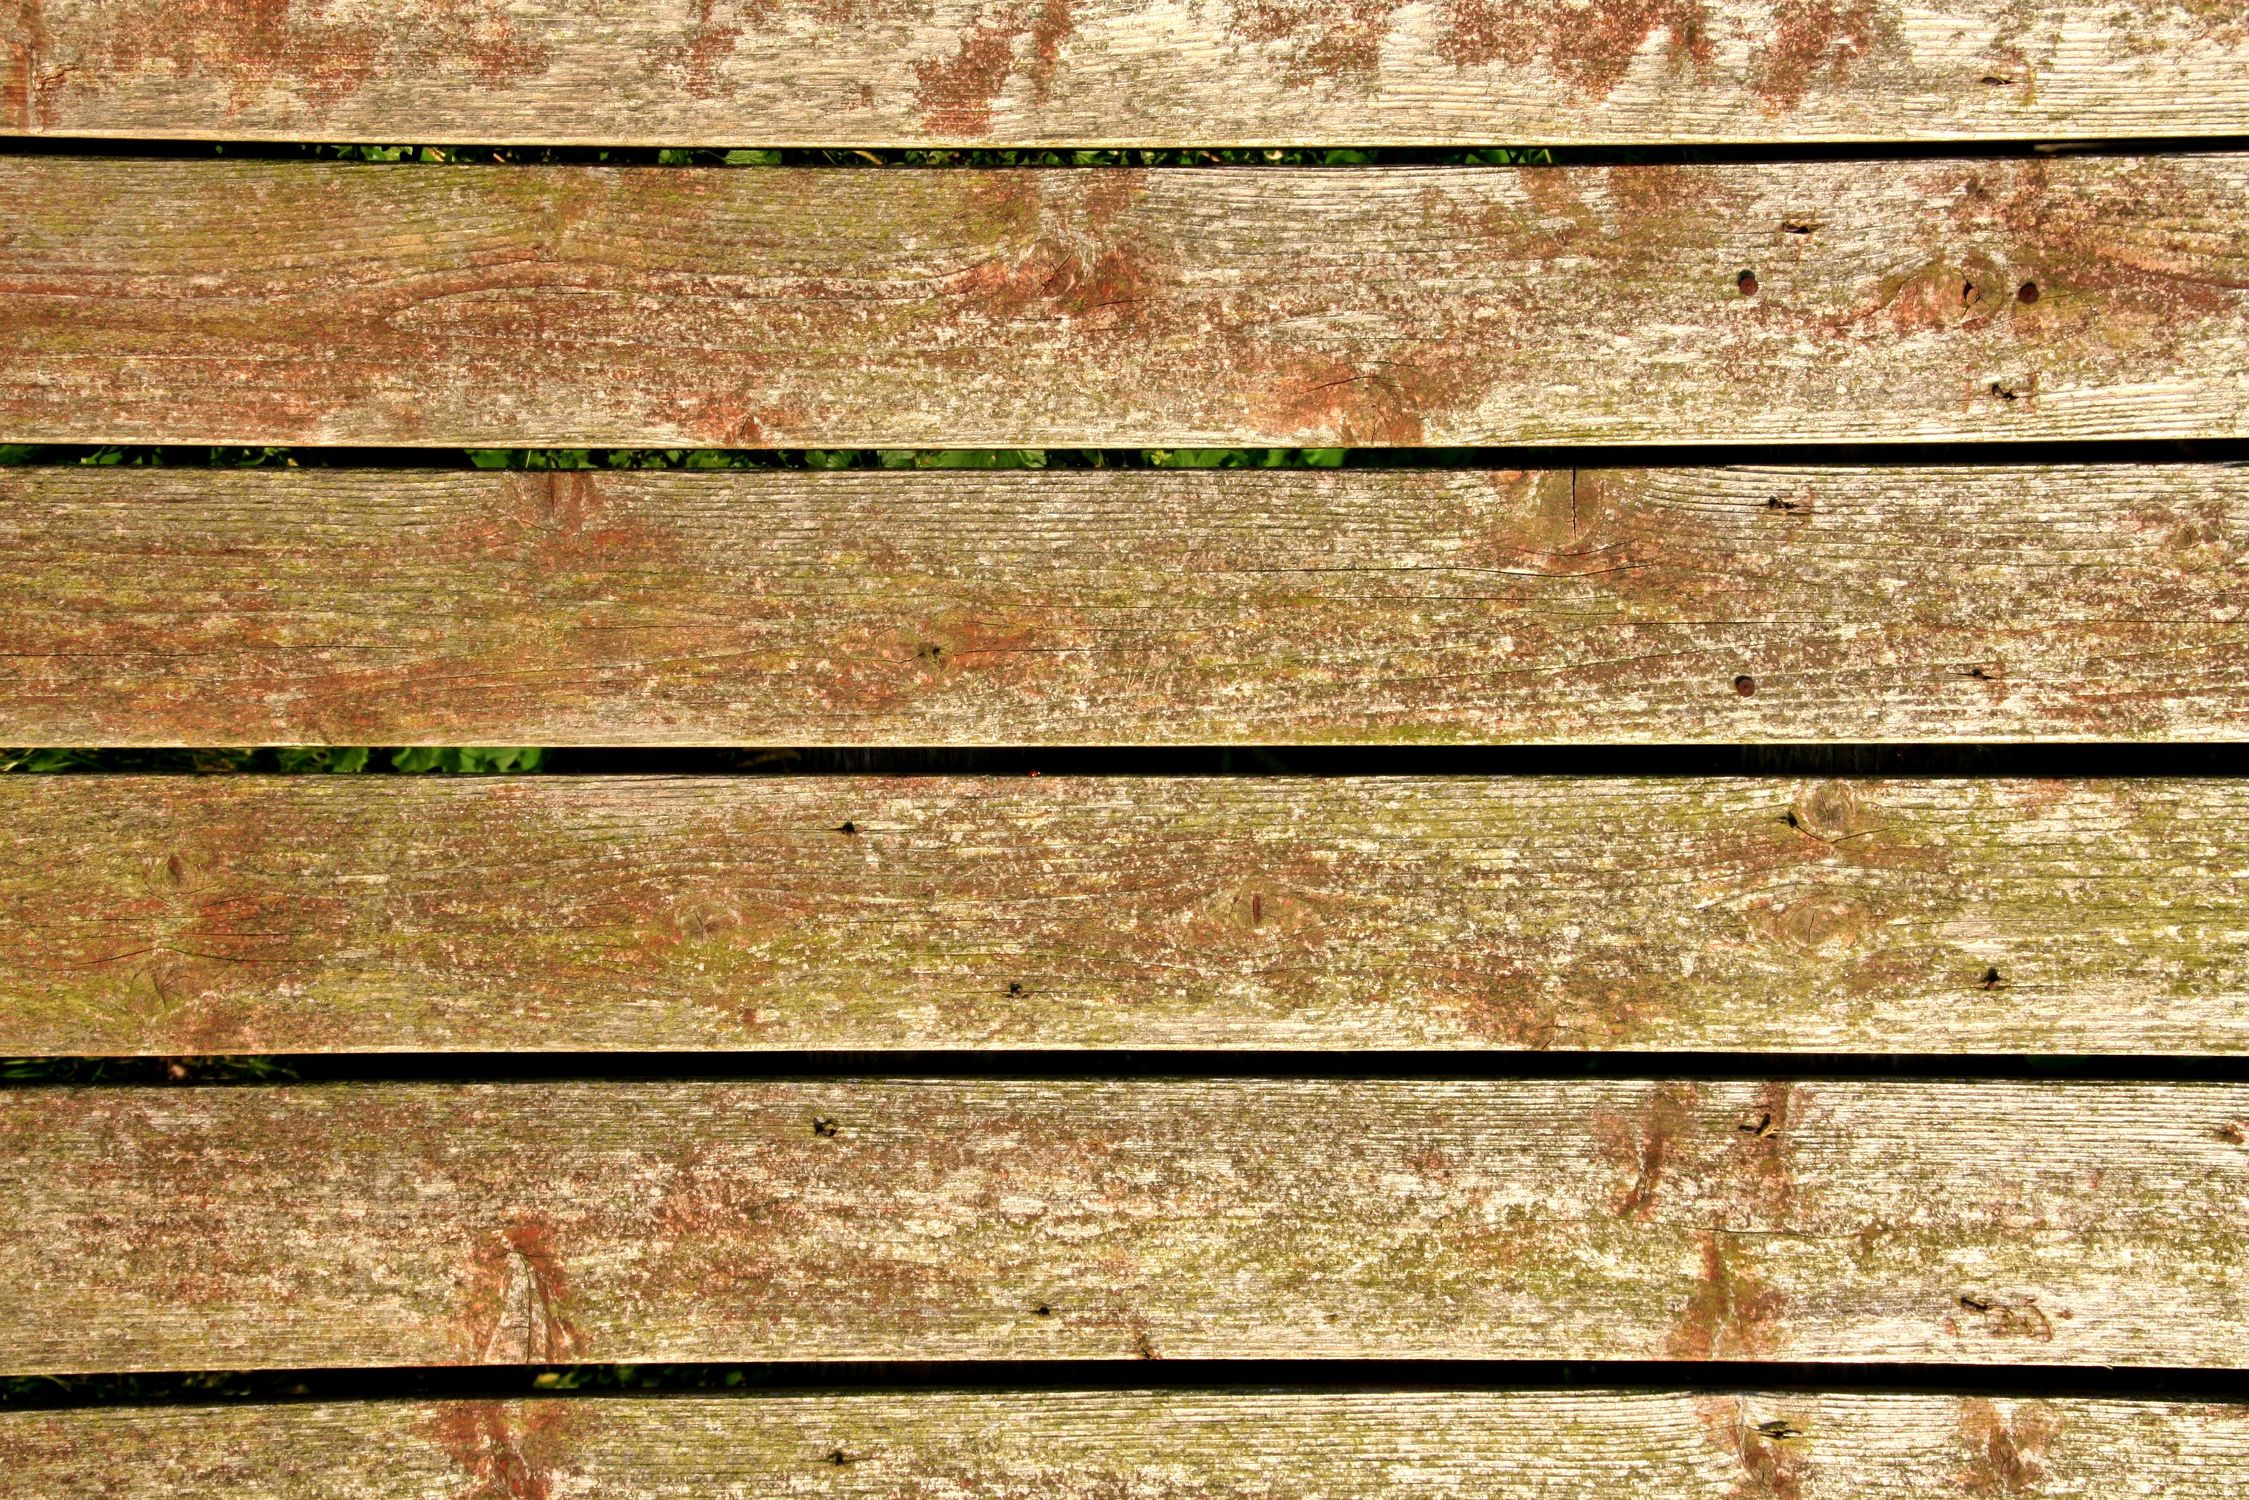 Bild mit Holz, Holzstruktur, altes Holz, Holzbretter, Holzsteg, Holzweg, Hölzer, Hintergründe, Holzbrücke